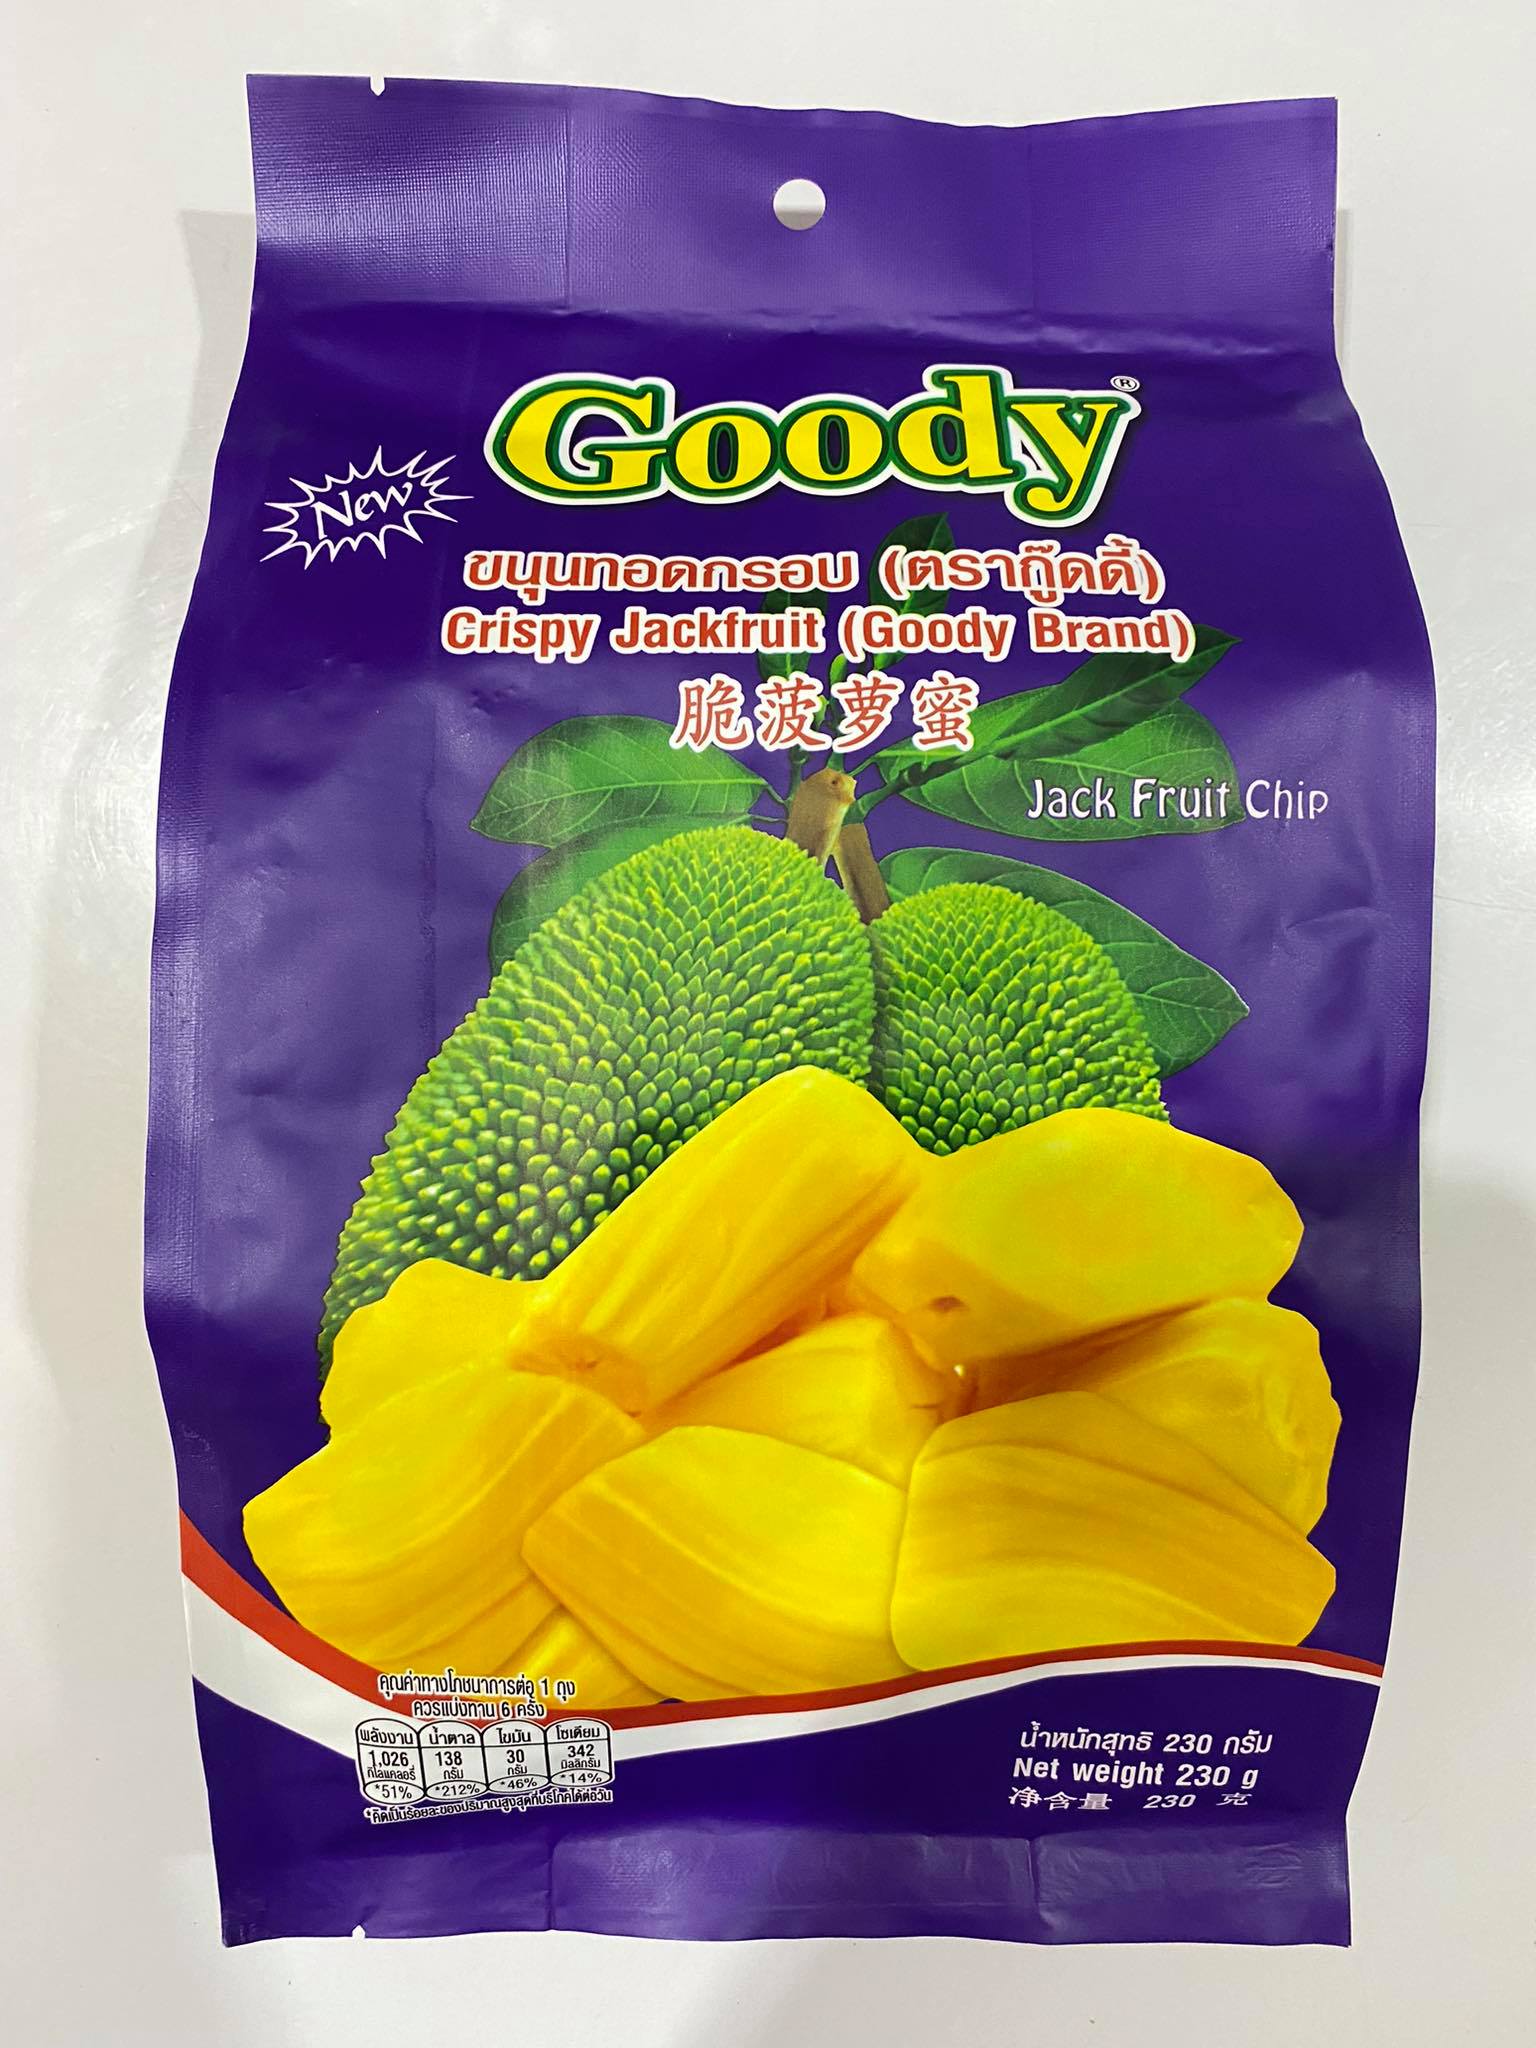 ขนุนอบกรอบ ผลไม้รวมอบกรอบ กู๊ดดี้ Crispy Jackfruit Goody